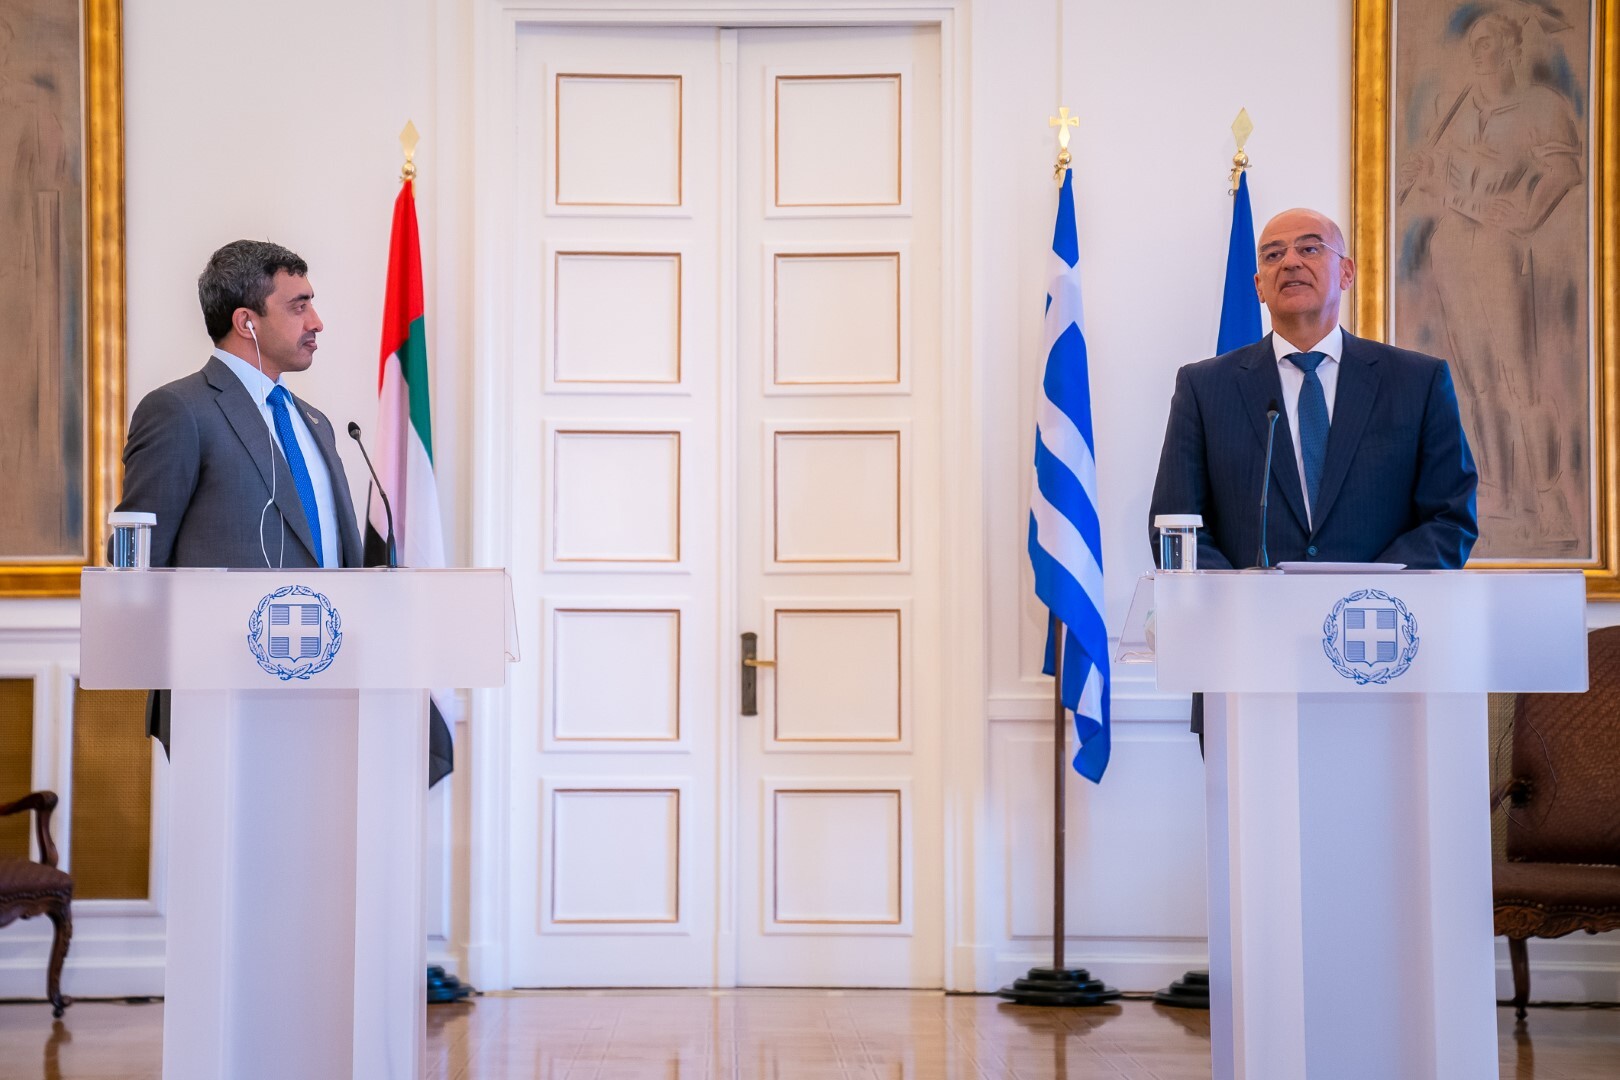 الإمارات: نطمح لشراكة استراتيجية راسخة مع اليونان